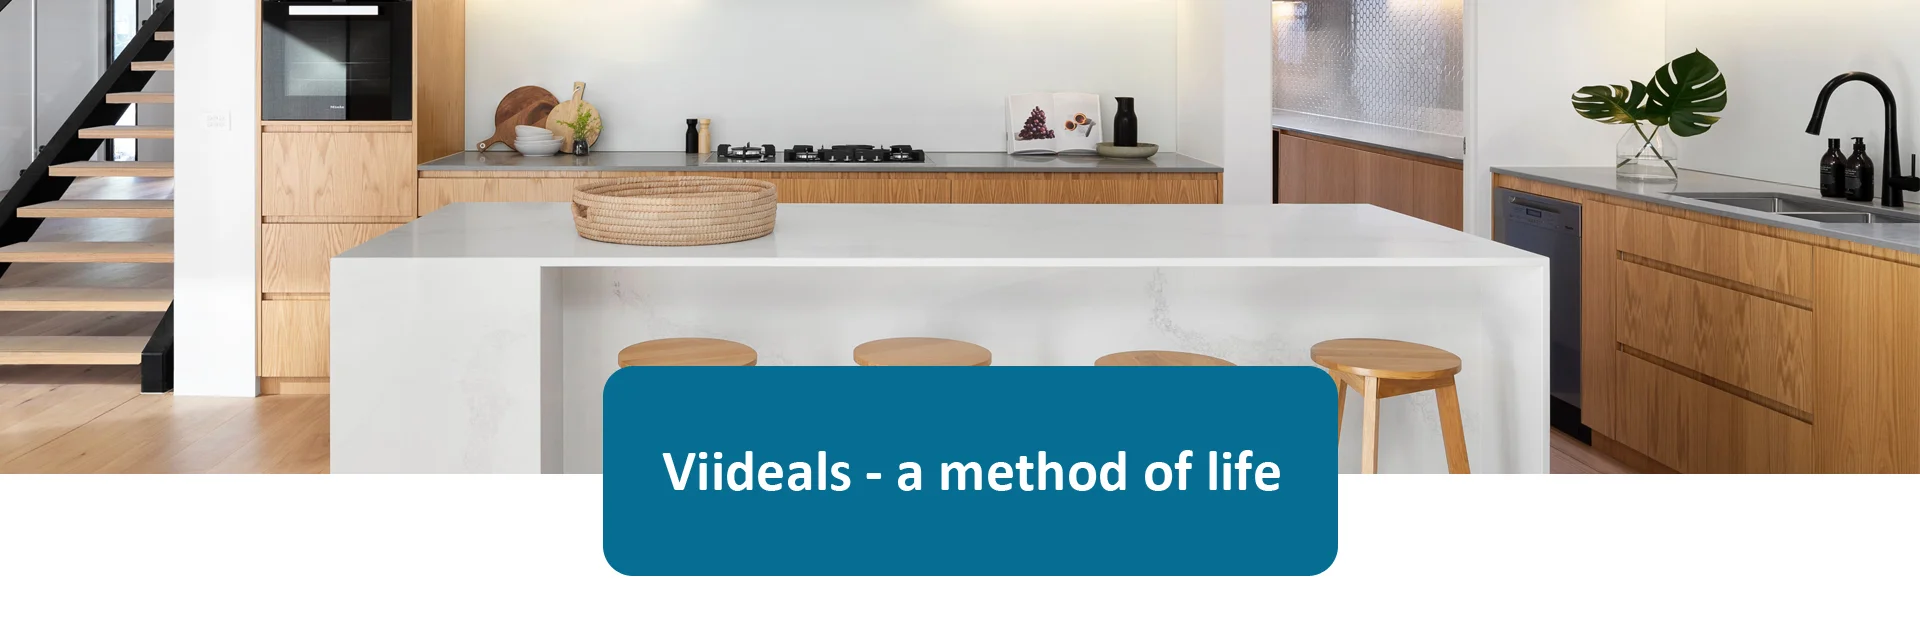 Viideals a method of life